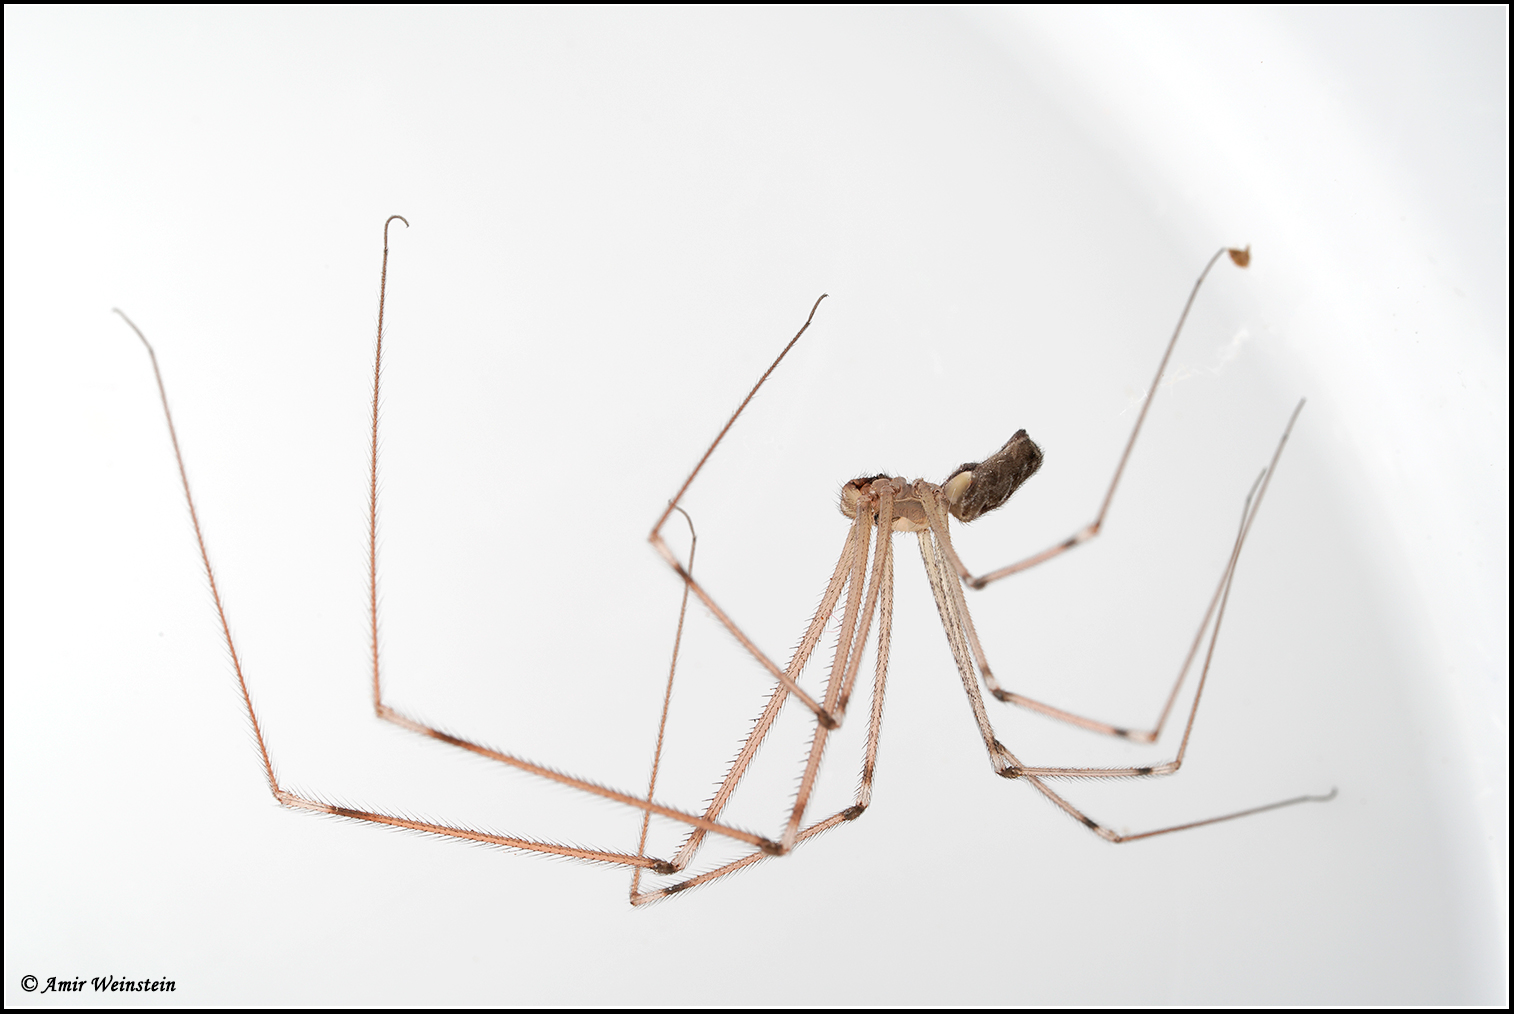 מרעידן Holocnemus pluchei נפוץ מאוד בבתים, במיוחד בנישות שאינן מופרעות.
אינו מסוכן, טורף גם עכבישים אחרים, מהווה מטרד ויזואלי בשל הרשת האוספת אבק.